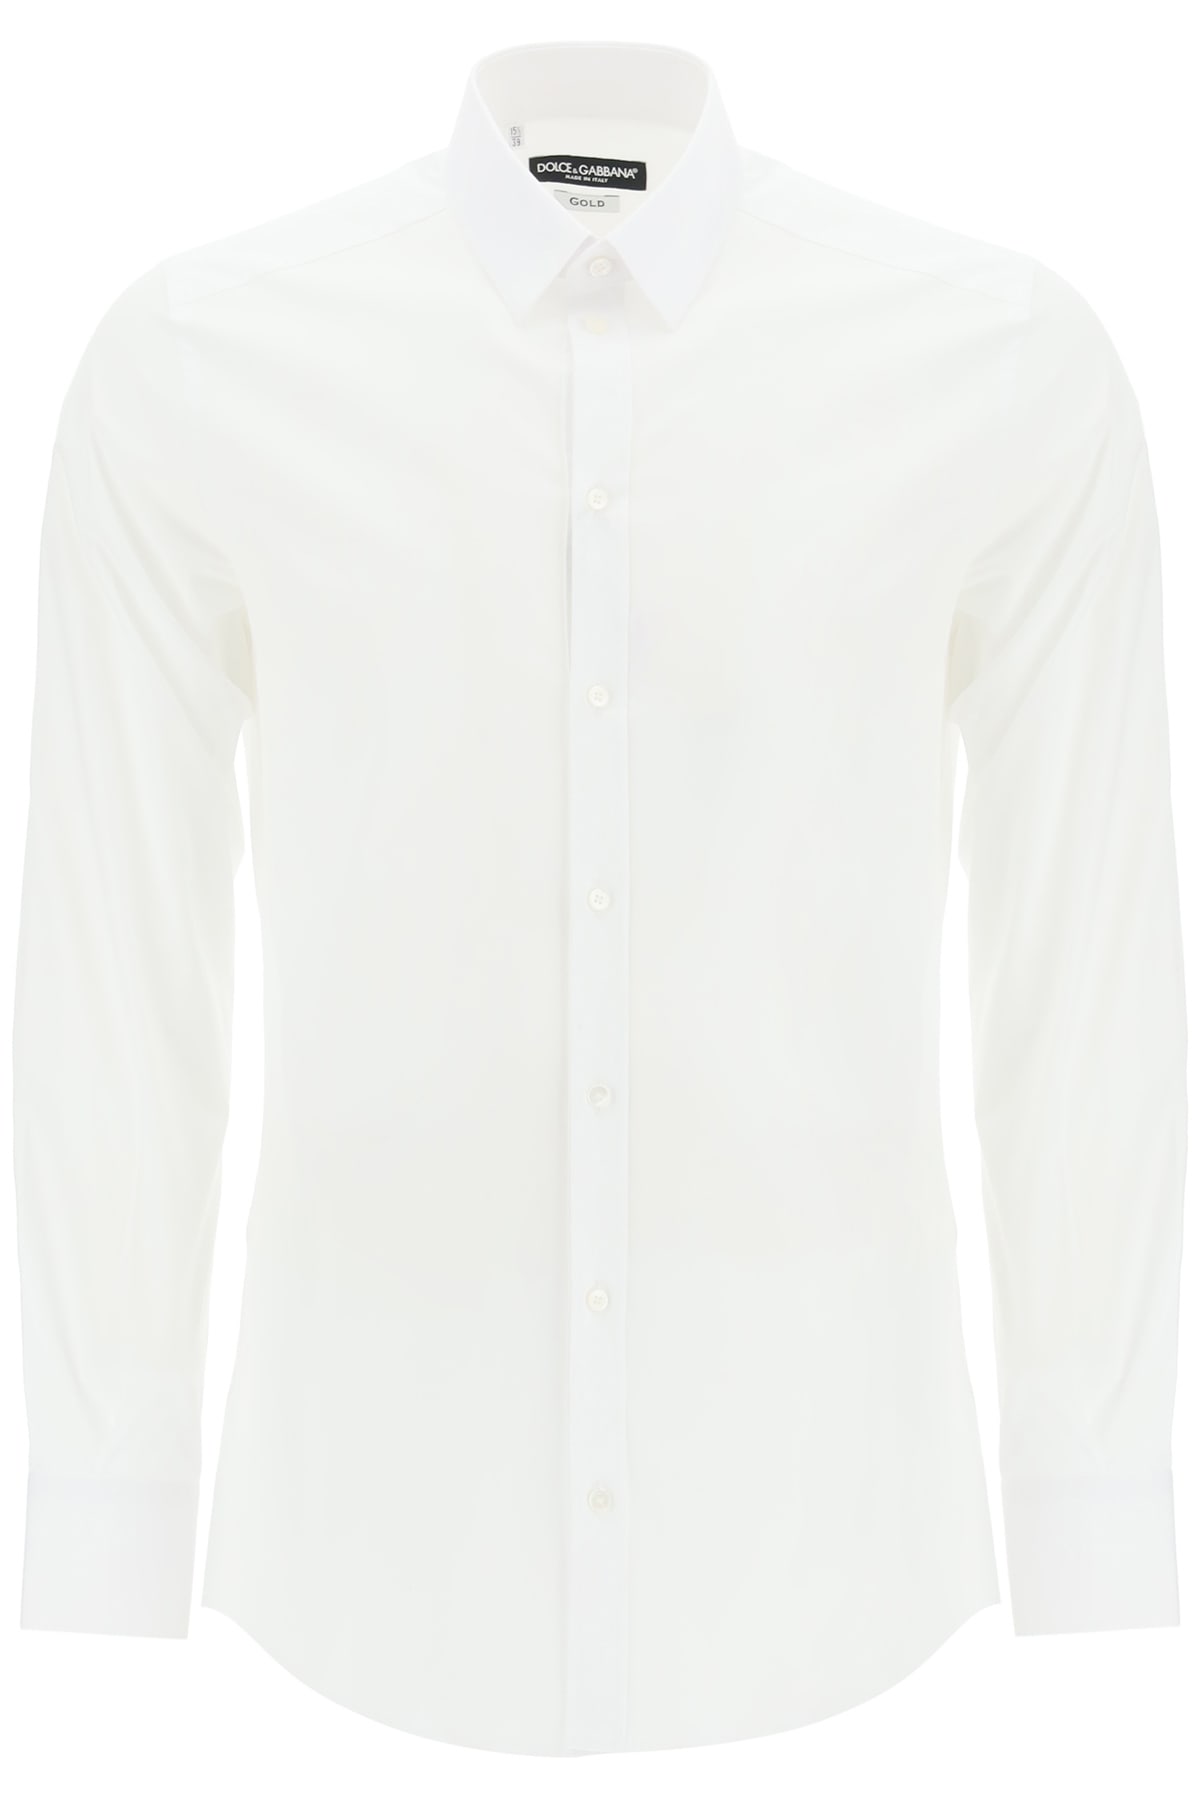 Dolce & Gabbana Shirt In Bianco